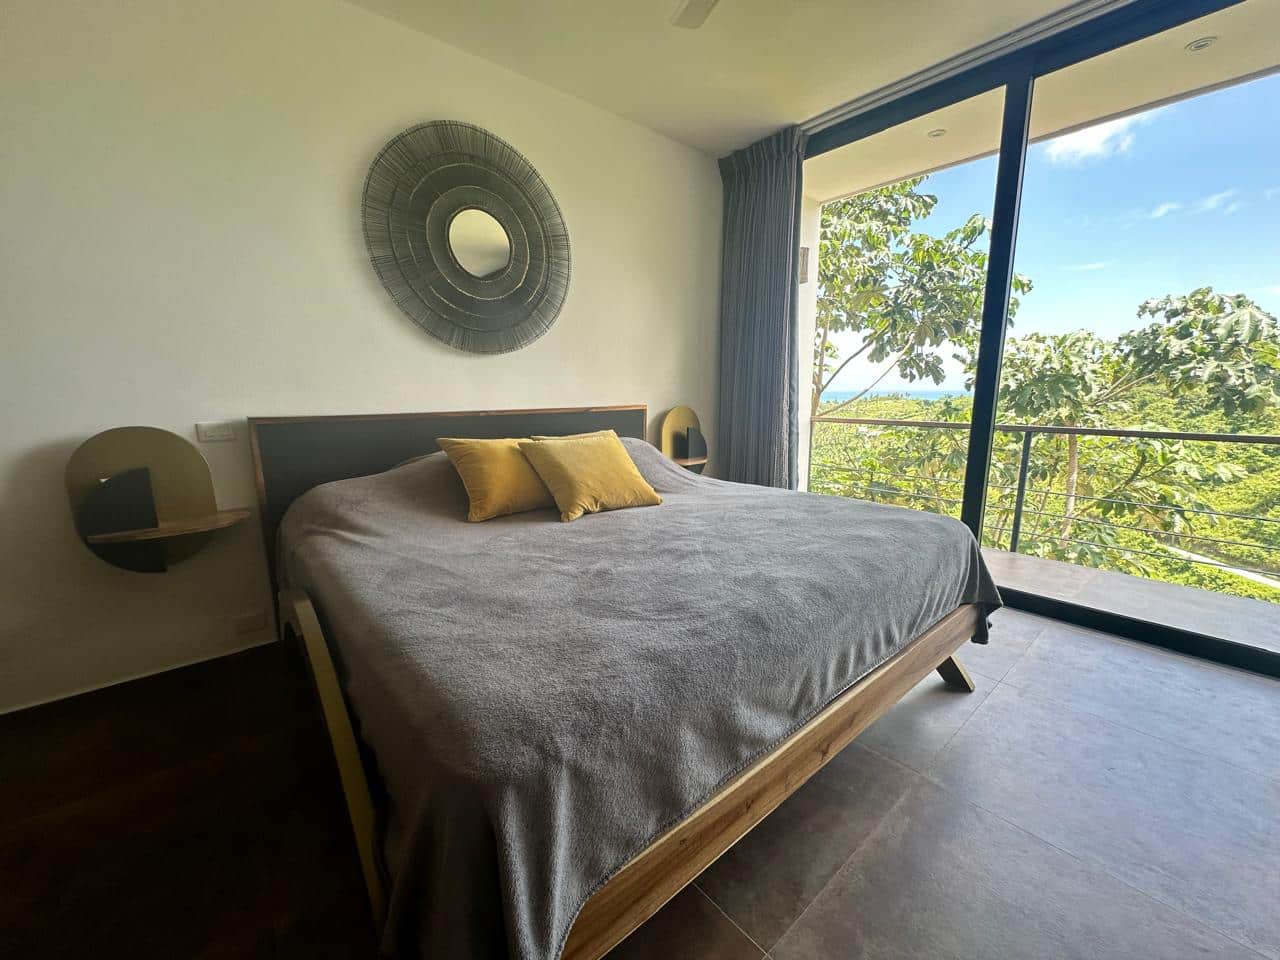 Splendid 4-bedroom villa with ocean vista - Las Terrenas Real Estate - Ocean Edge Dominican Republic (27)